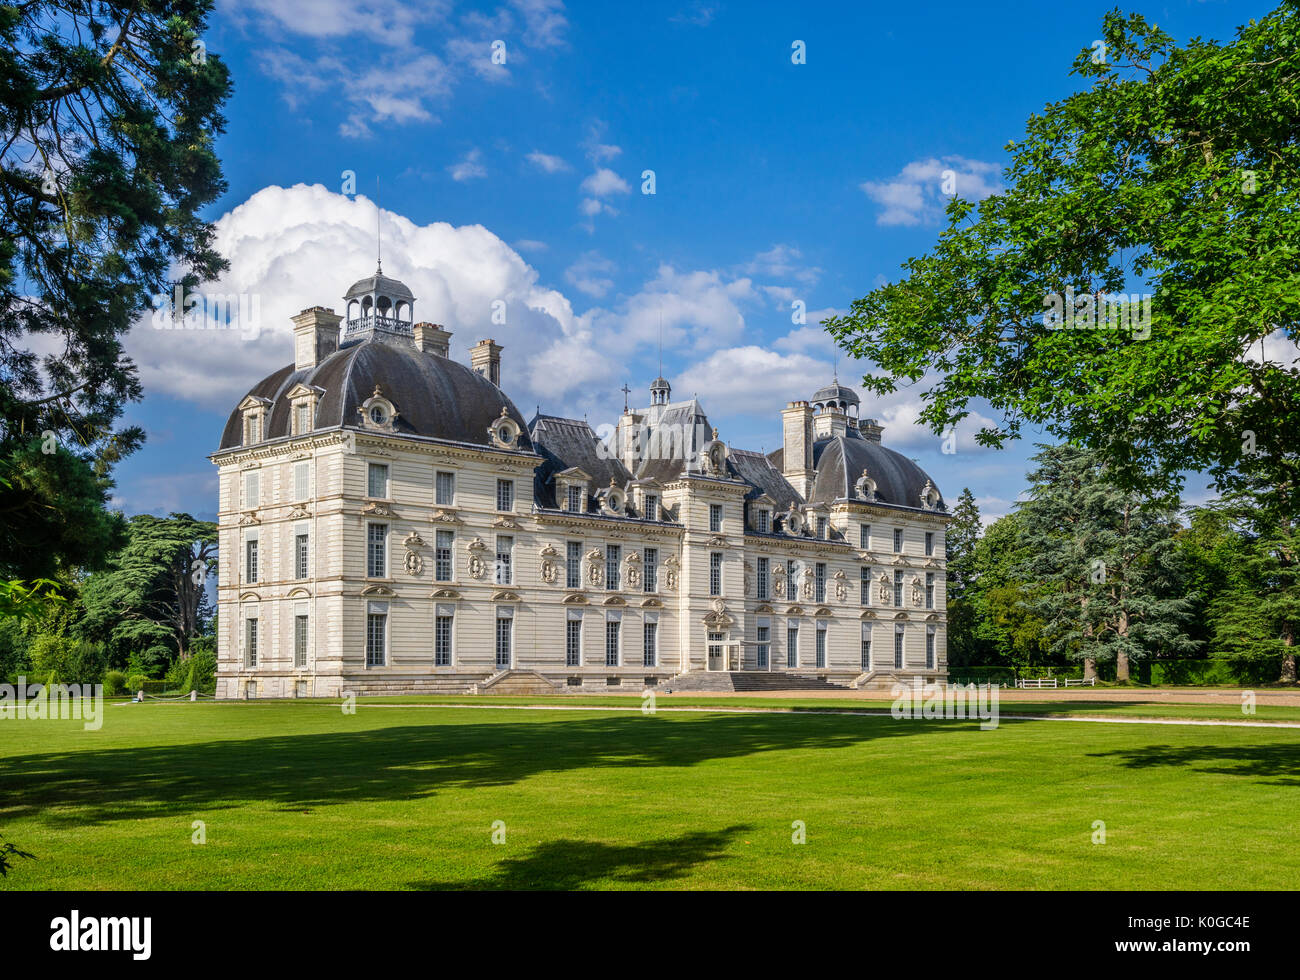 Francia, Loir-et-Cher departamento estilo Louis XIII, la fachada sur del castillo de Cheverny Foto de stock